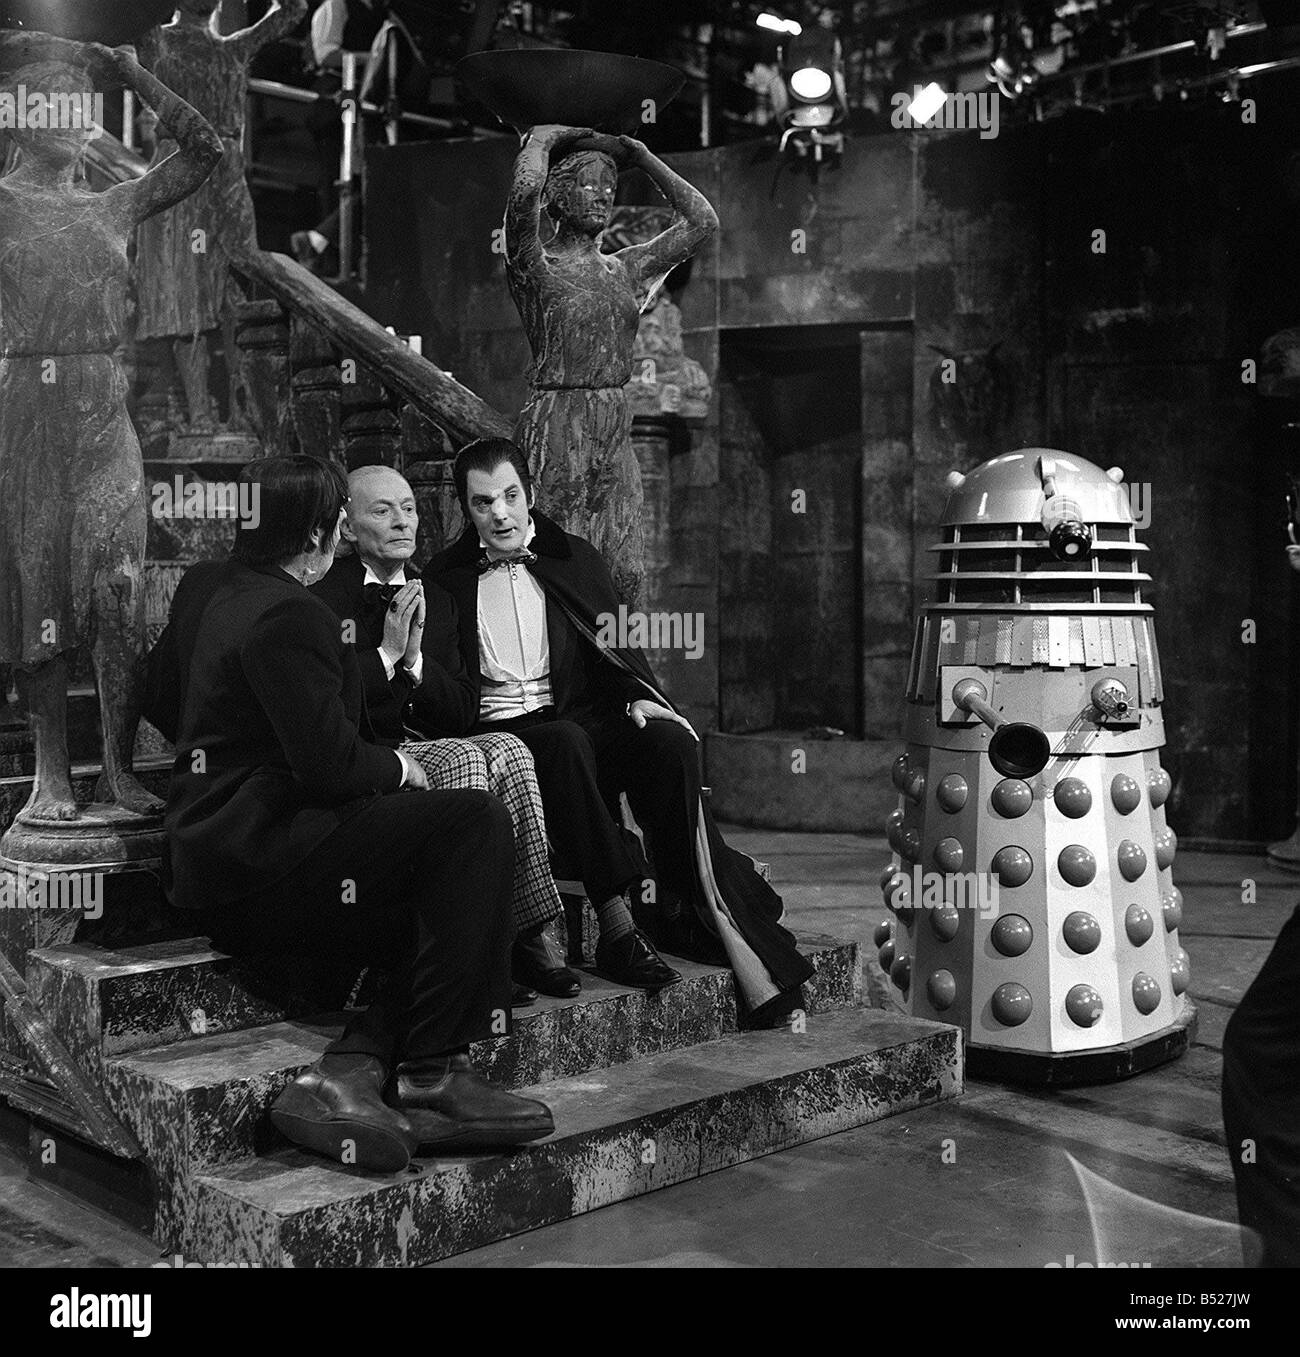 Fernsehprogramme Dr Who Mai 1965 eine Szene aus der TV-Serie mit William Hartnell als Dr, John Maxime als Frankenstein und Stockfoto